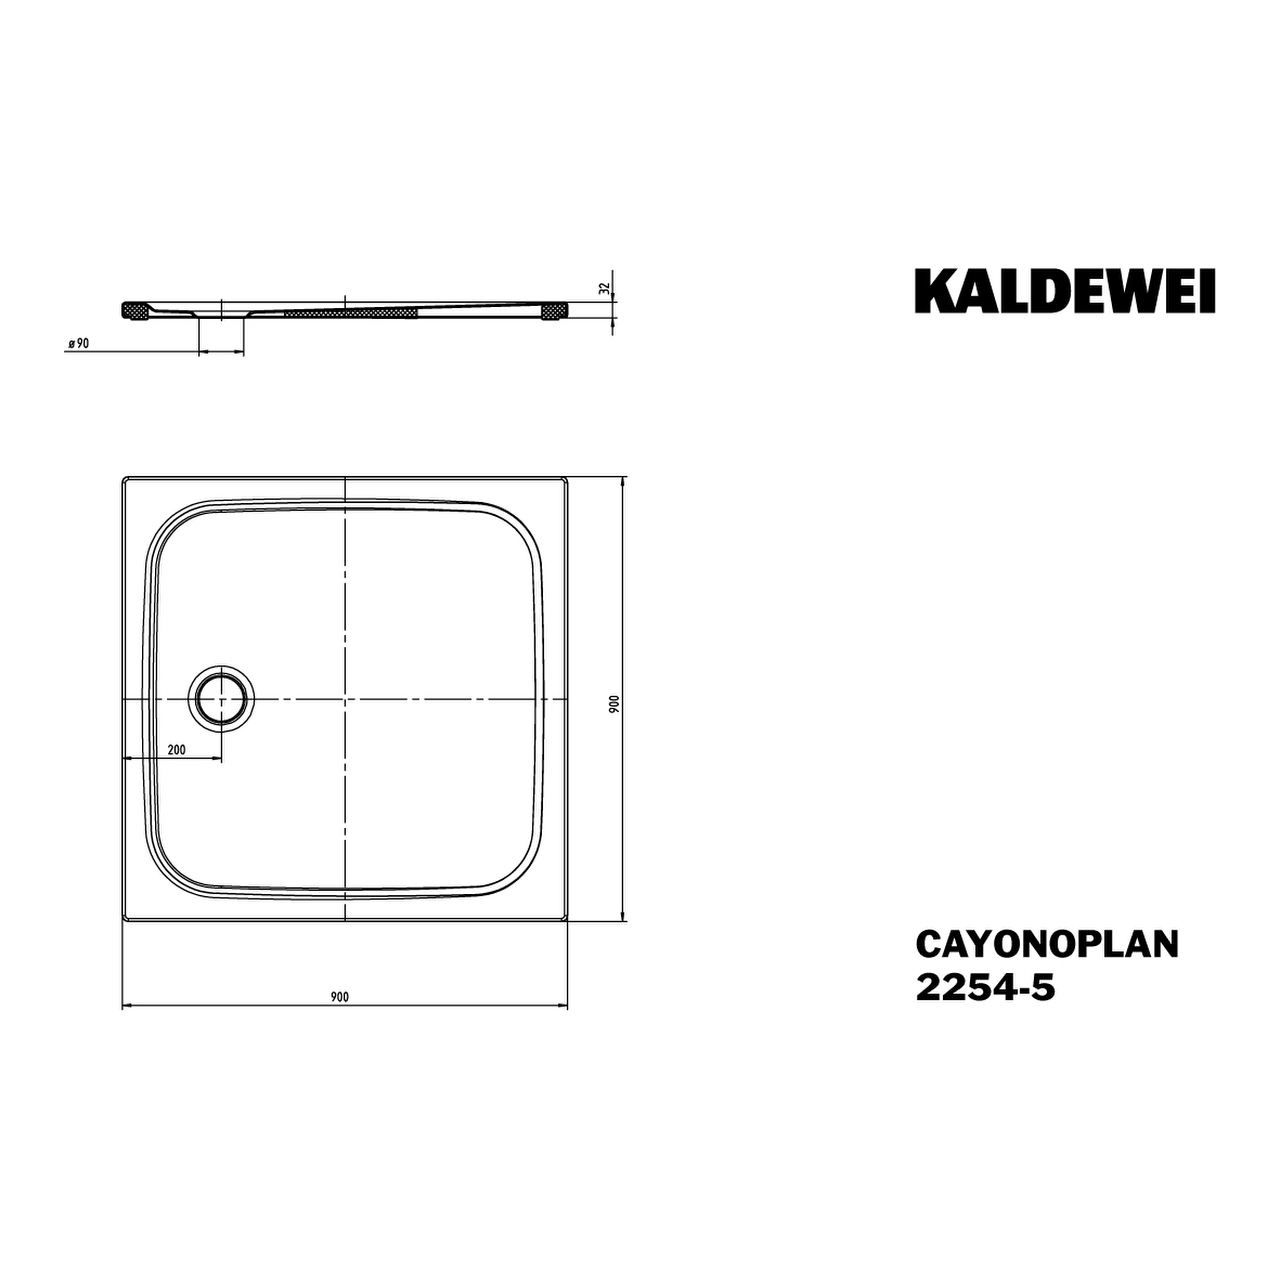 Kaldewei quadrat Duschwanne „Cayonoplan“ 90 × 90 cm in alpinweiß mit Vollantislip